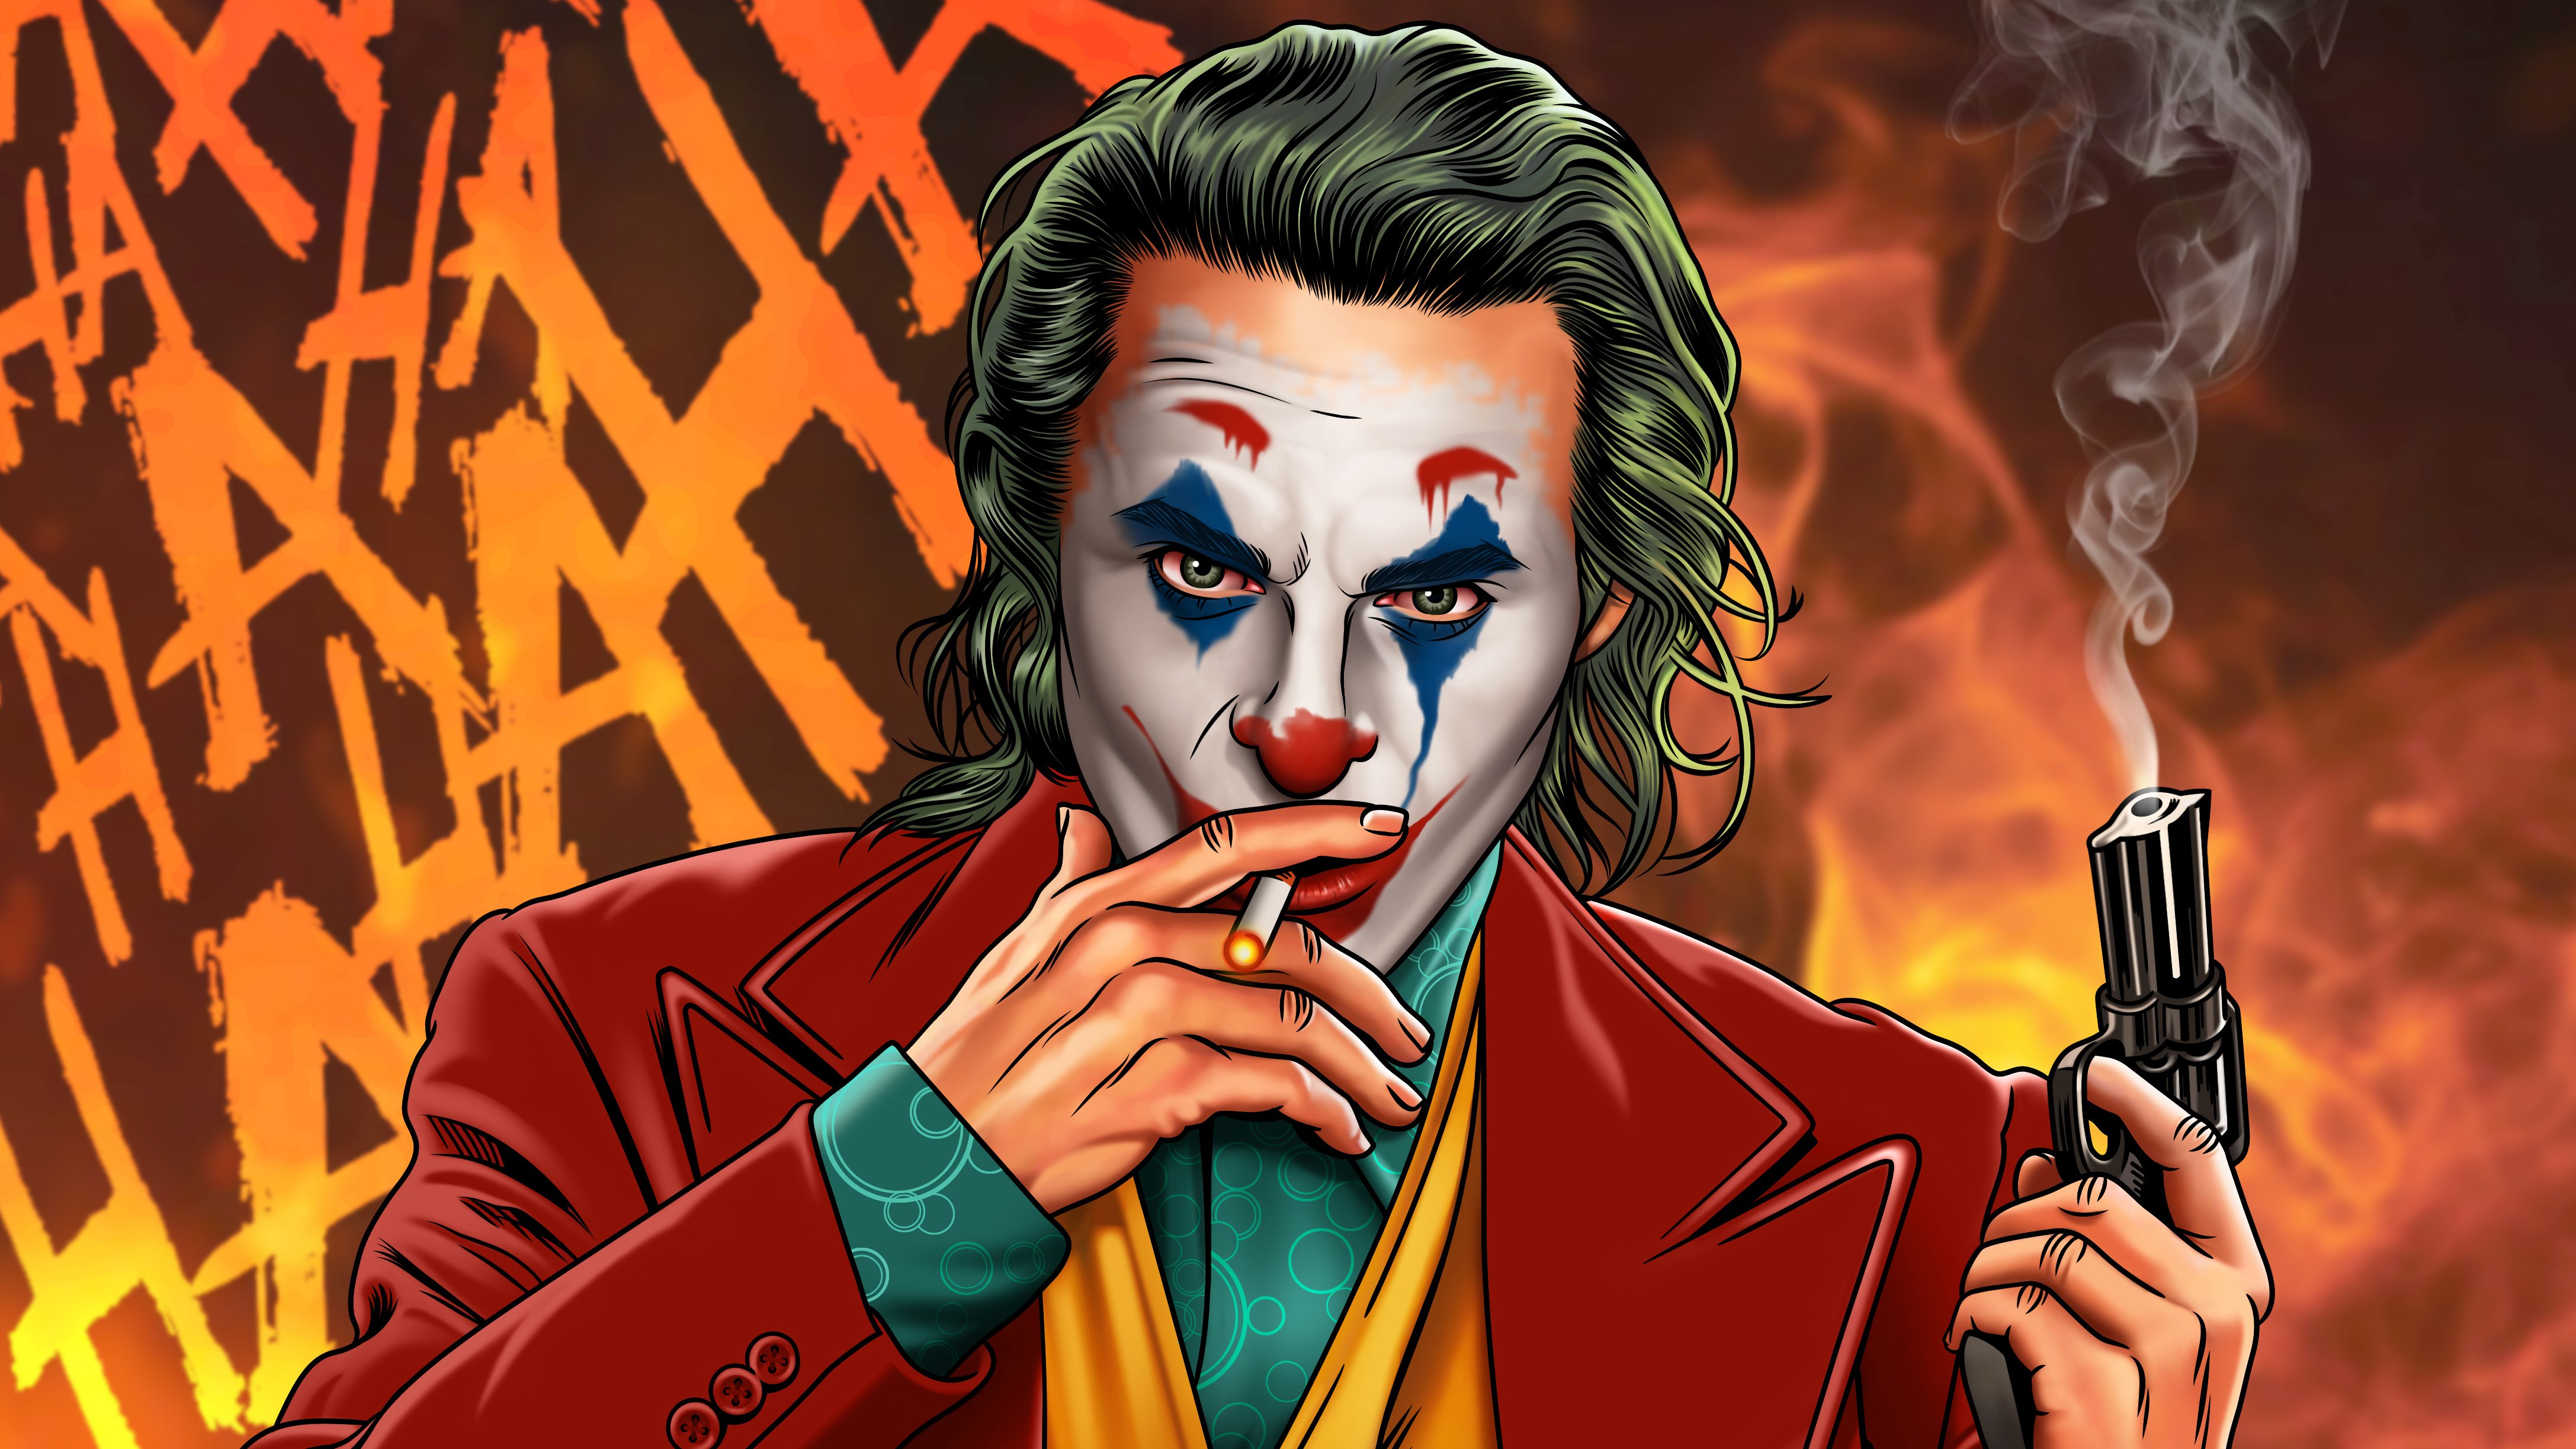 Wallpaper The Joker smoking with gun